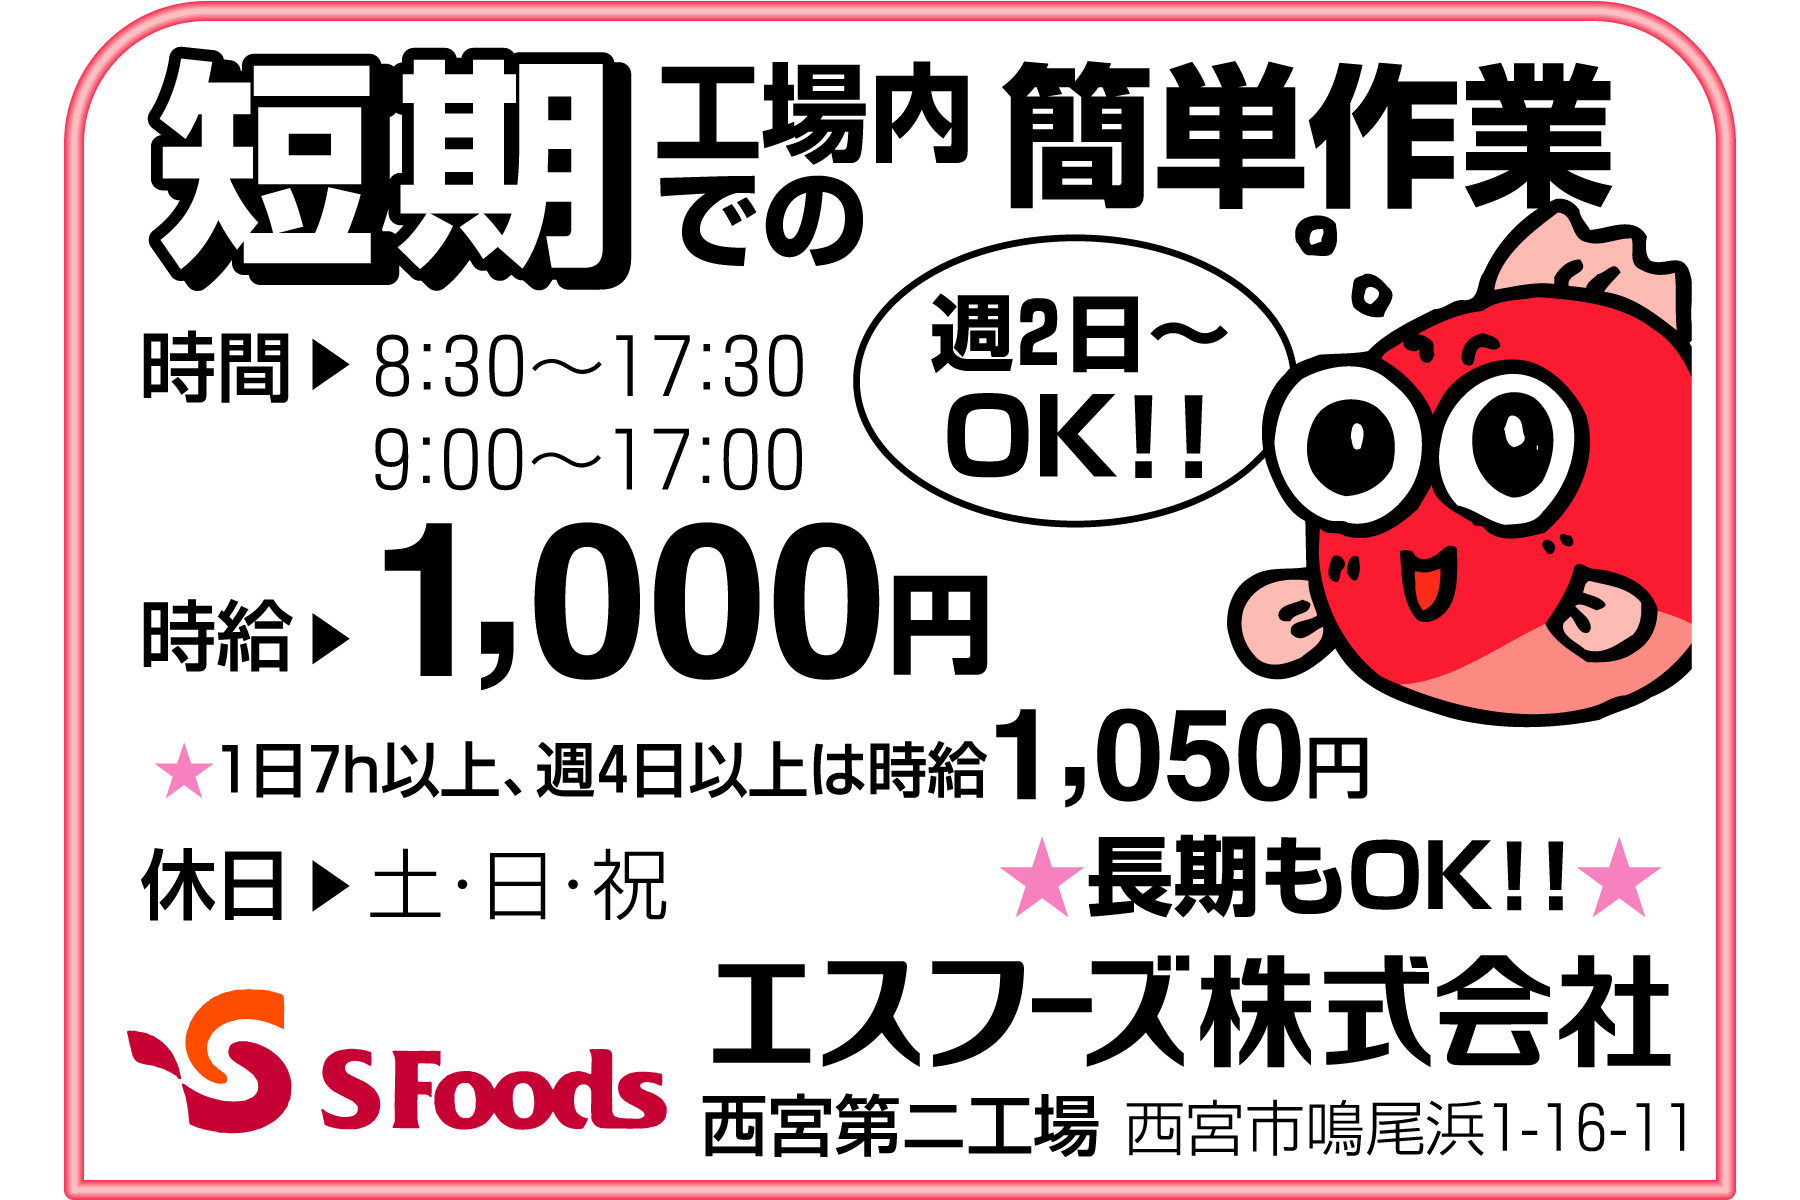 西宮市求人情報 短期 軽作業 パート 週2日 Ok 求人のふぁいと 西宮を中心とした阪神エリアに特化した求人サービスを実施しております